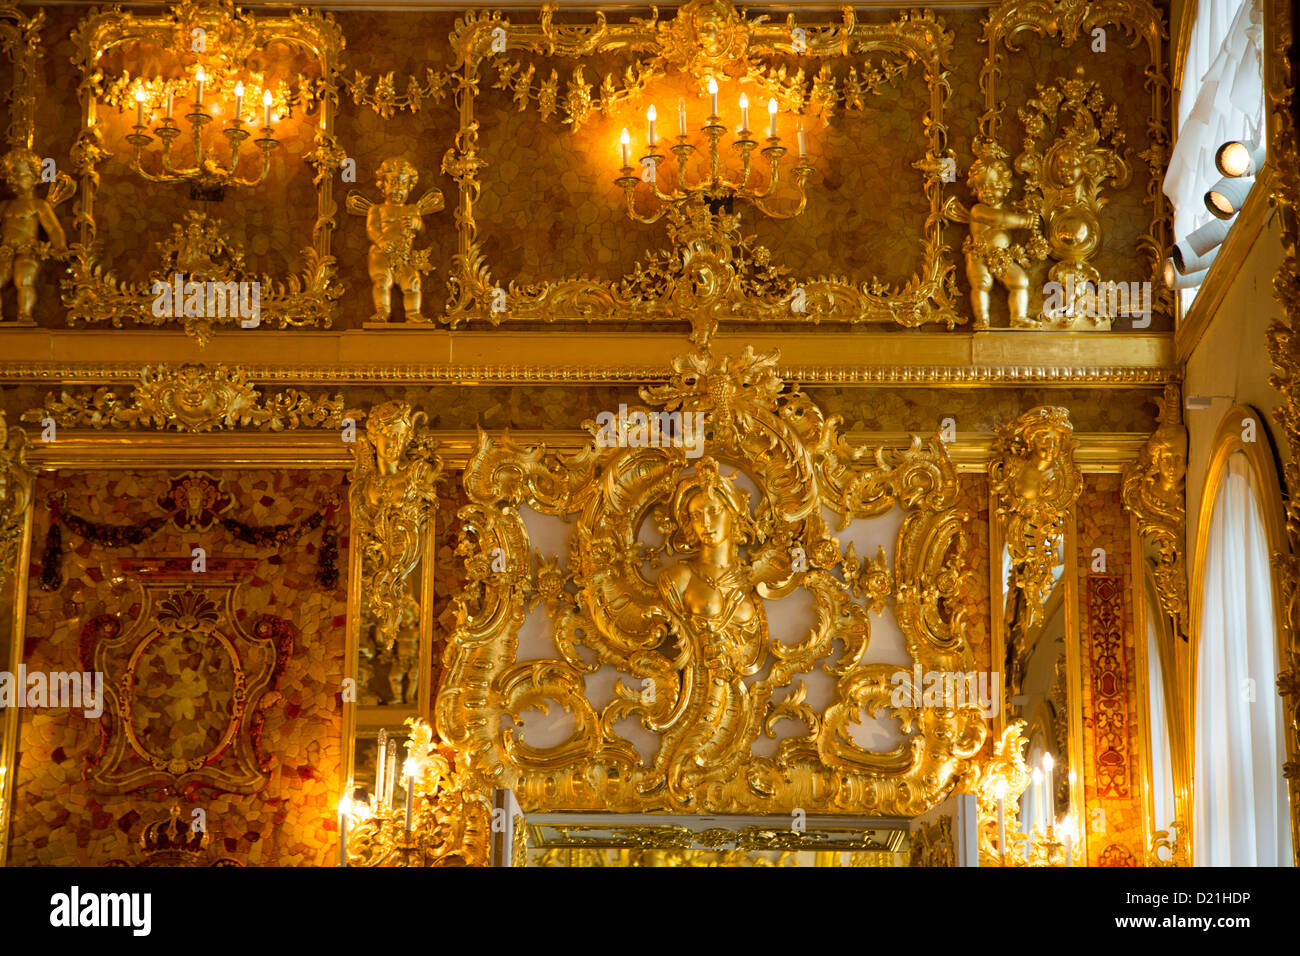 Restored Amber Room in Catherine Palace, Tsarskoye Selo, Pushkin, St. Petersburg, Russia, Europe Stock Photo